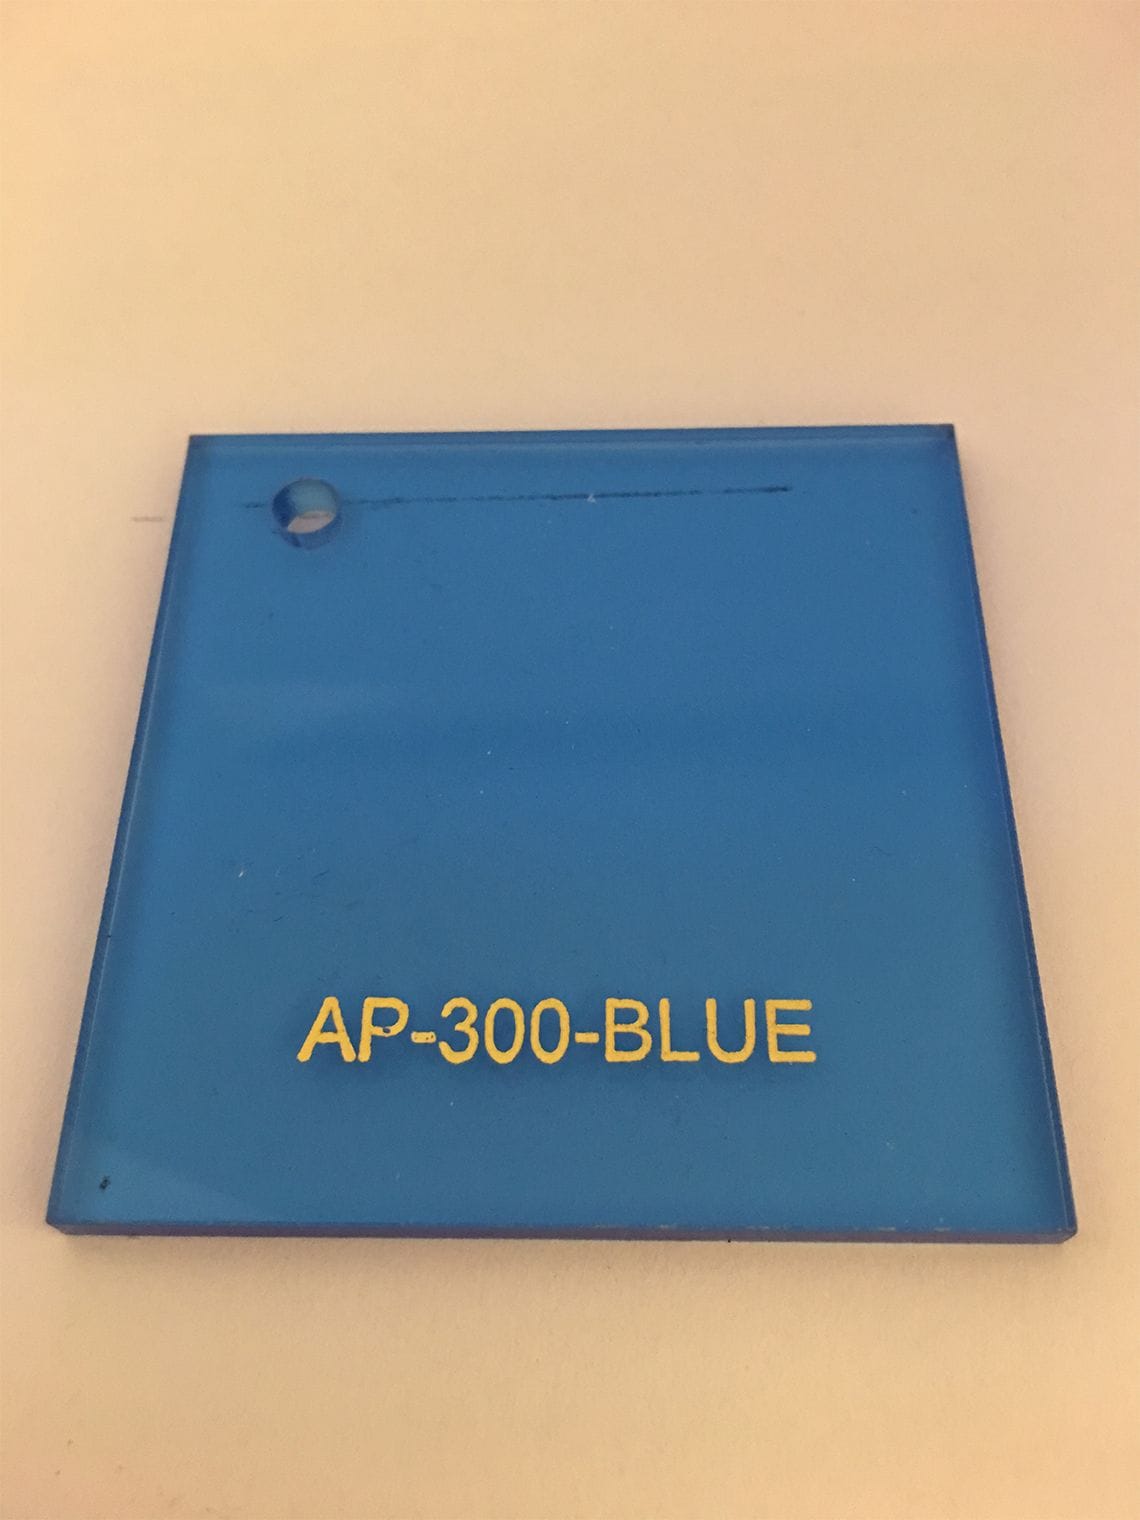 Ap-300-blue